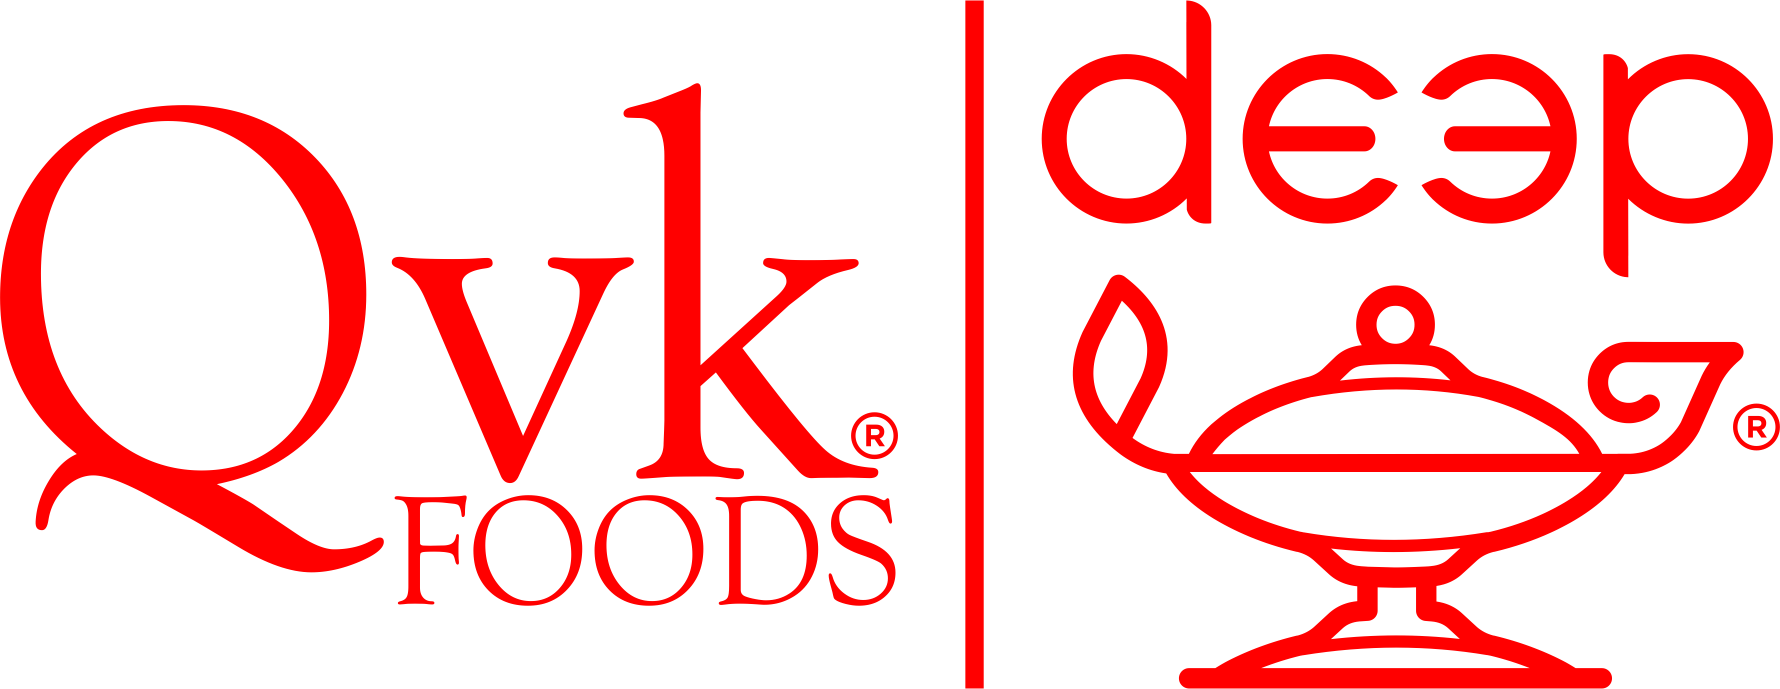 QVK Foods